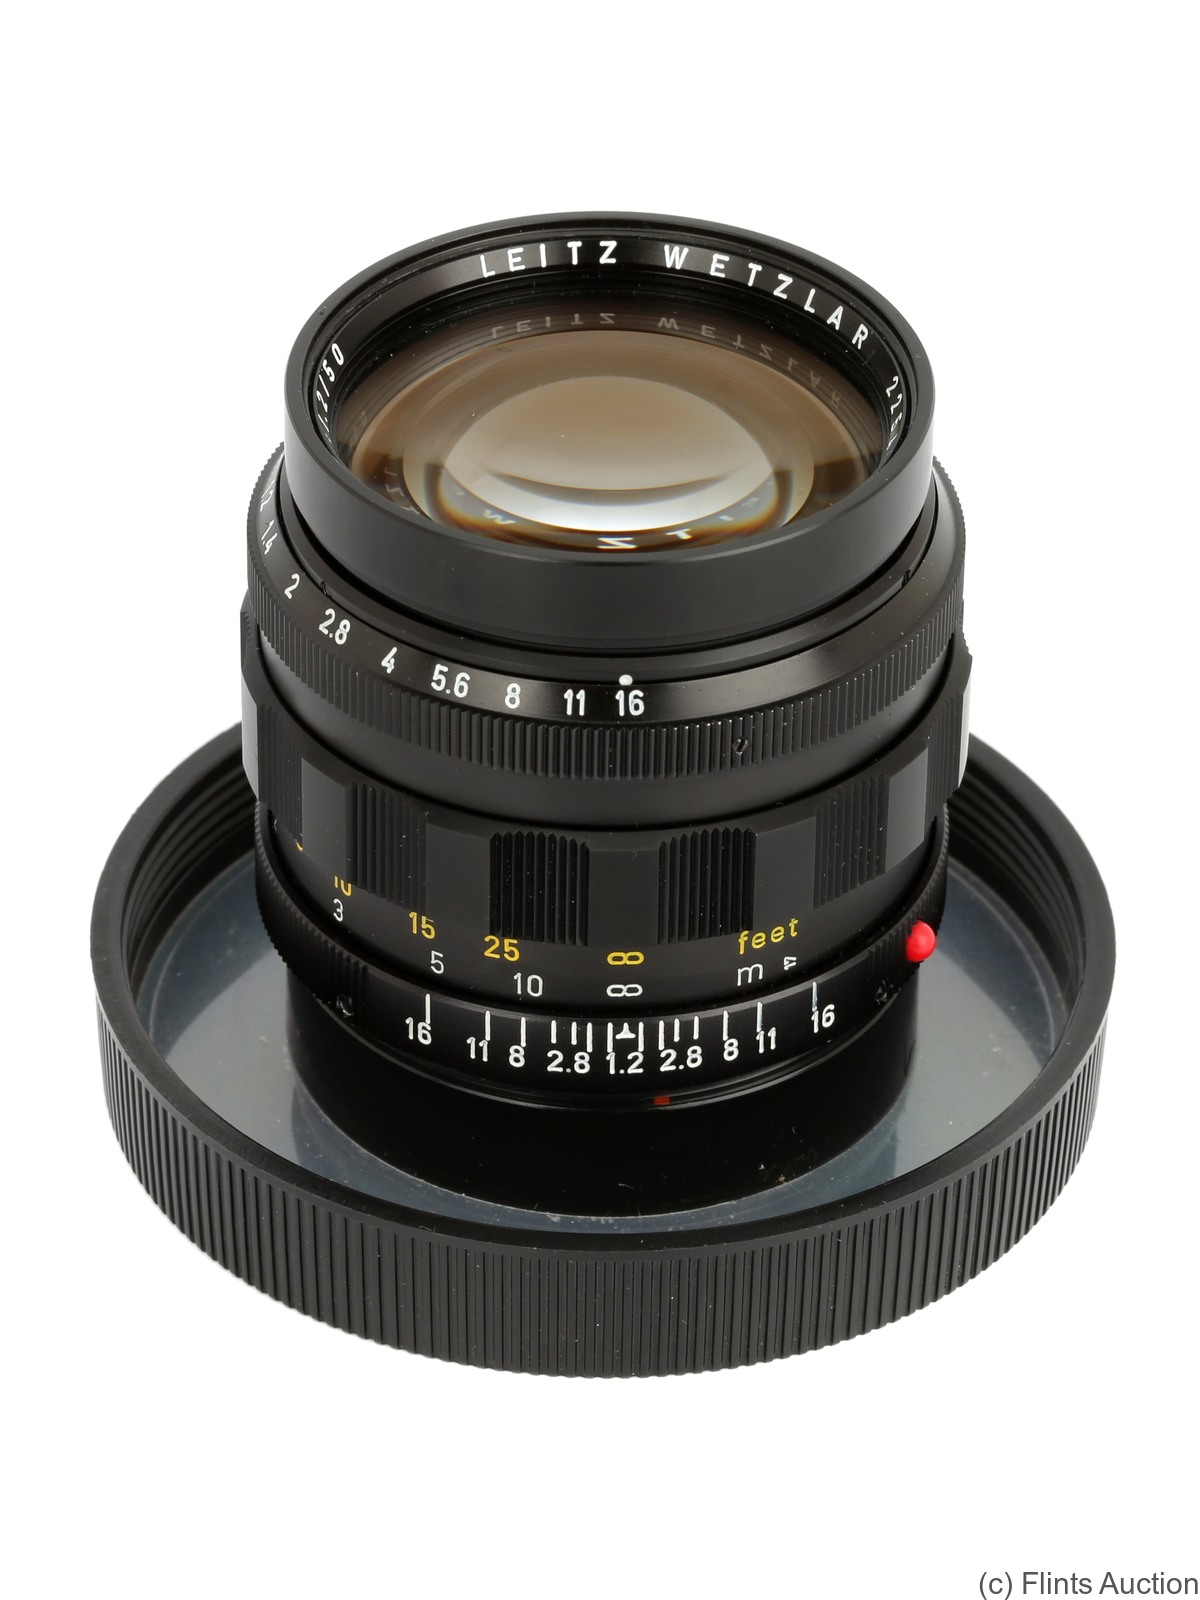 Leitz: 50mm (5cm) f1.2 Noctilux (BM) camera